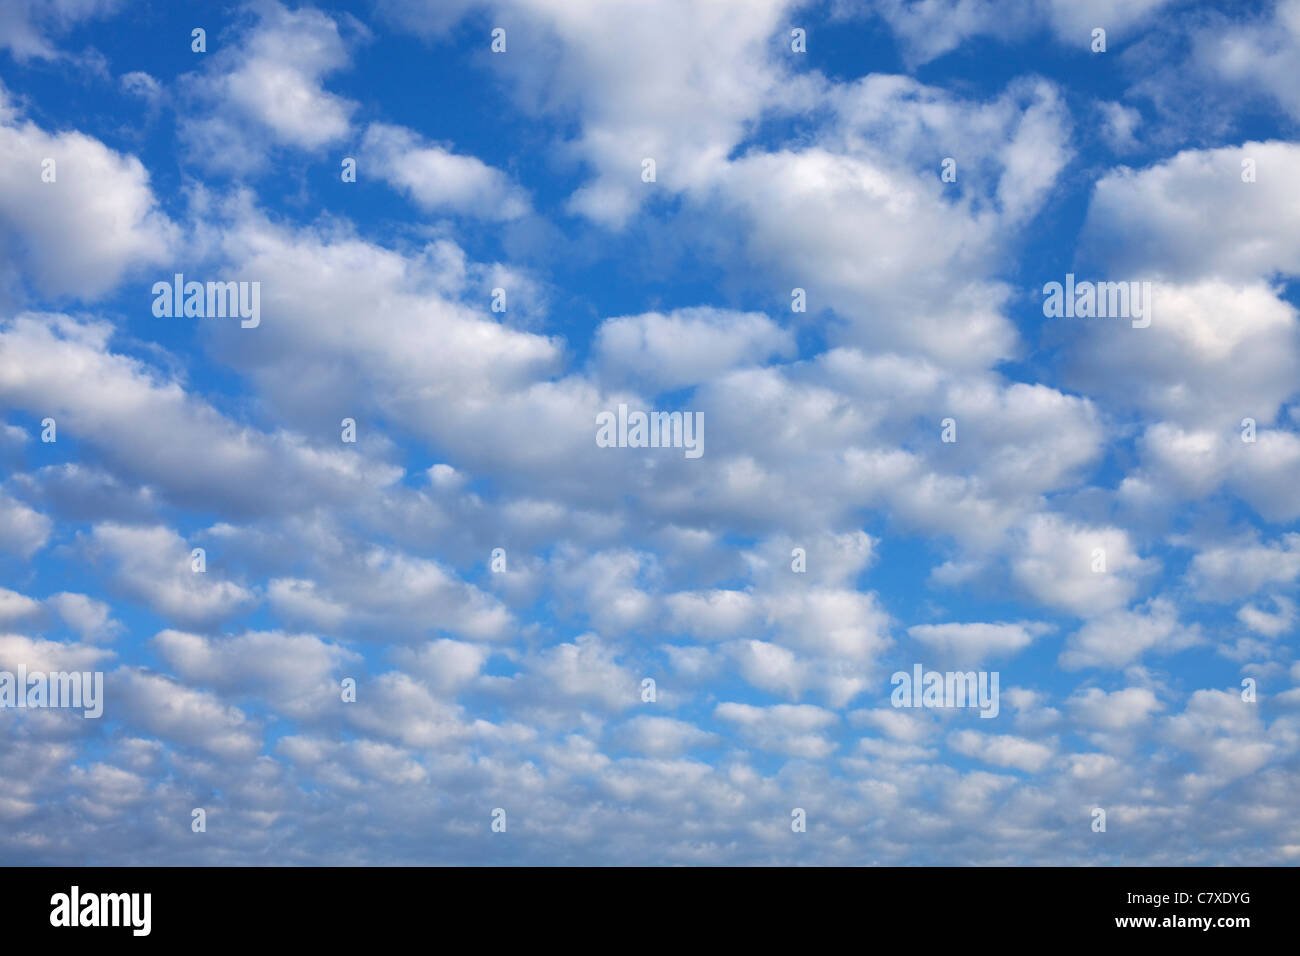 immagine full frame di nuvole contro un cielo blu Foto Stock